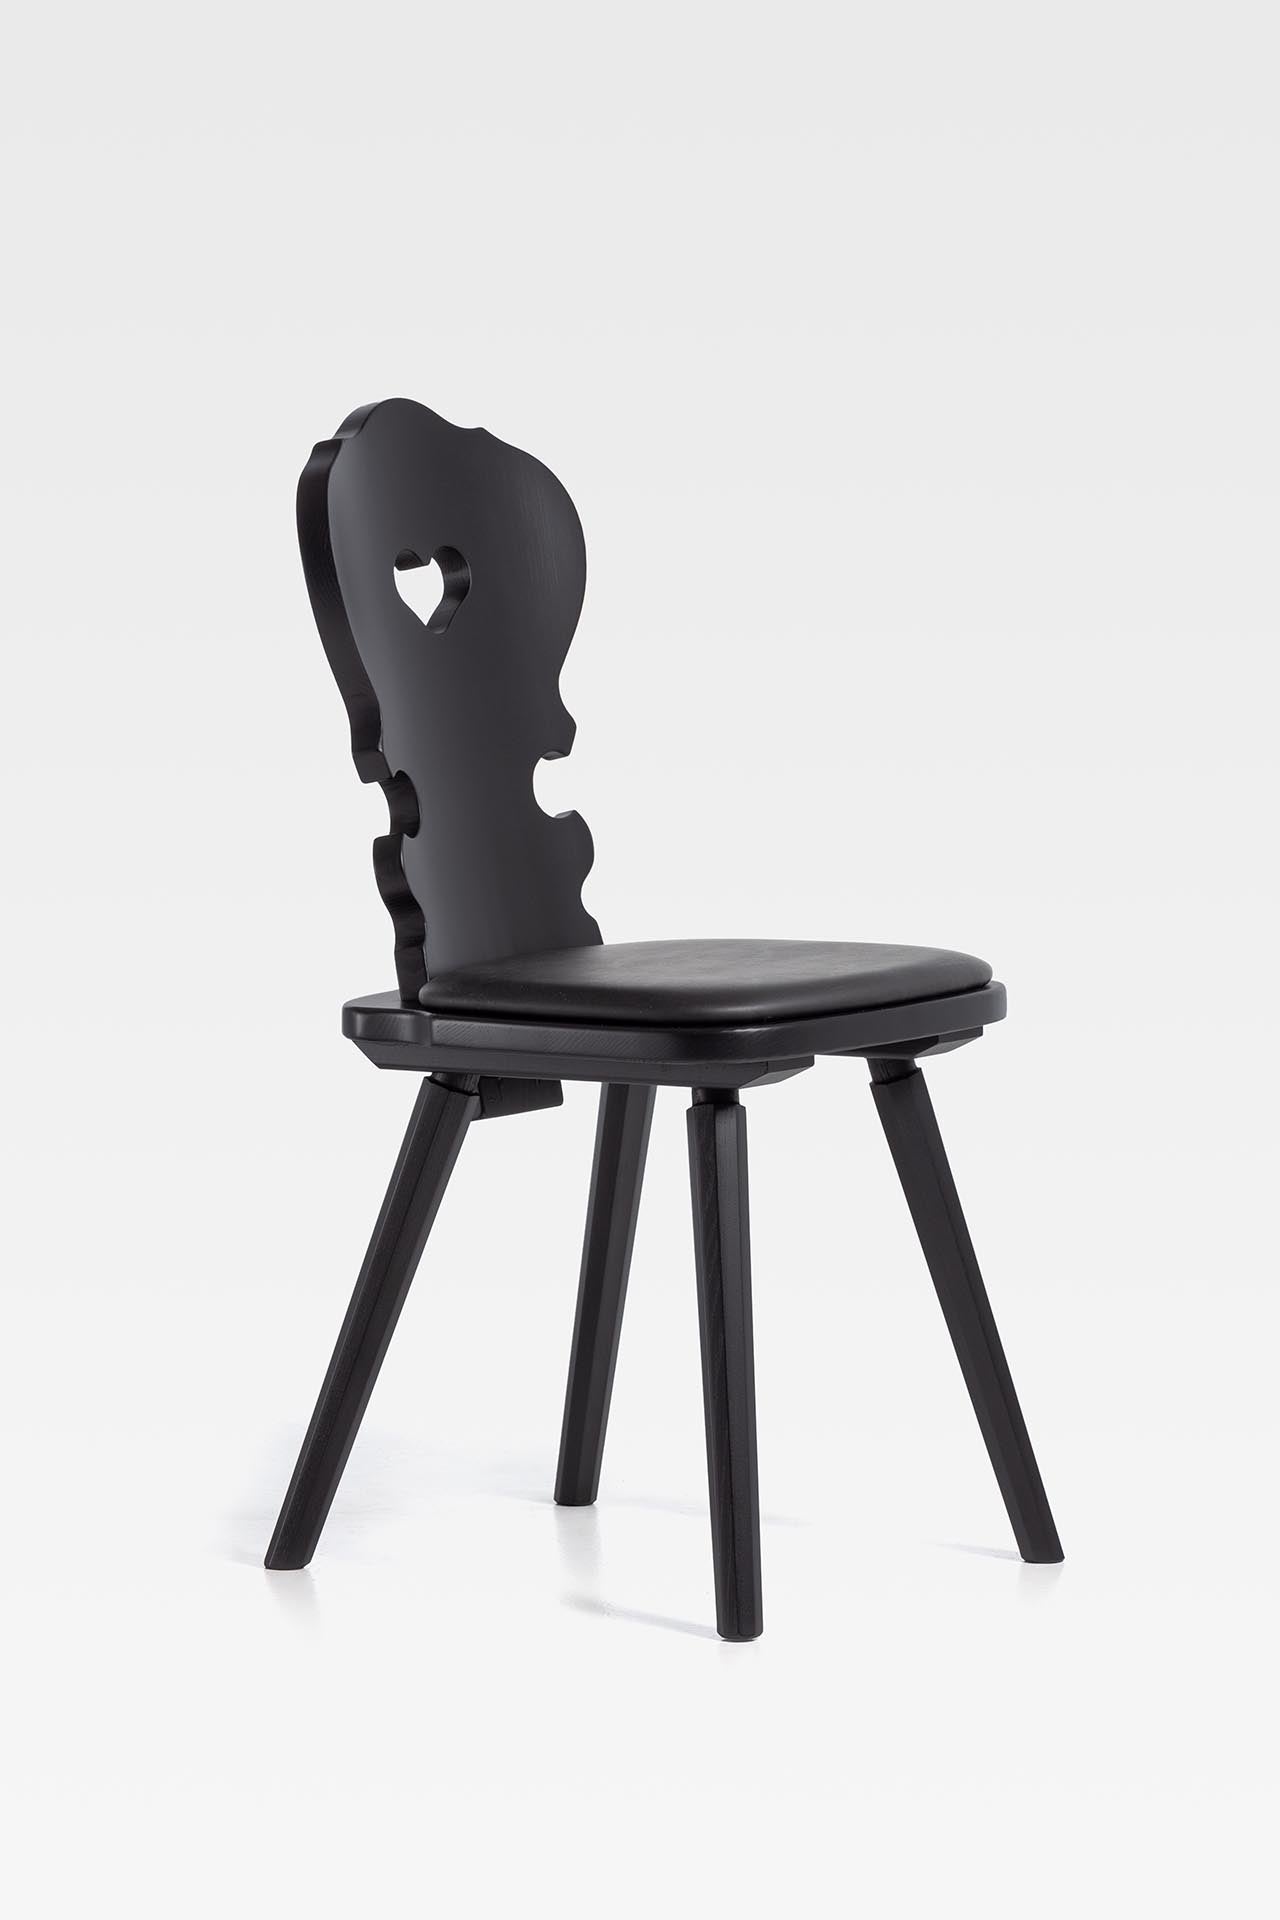 Sedia tirolese in abete nero VIENNA Sipa, stile Chalet montagna - Gaidra HOME